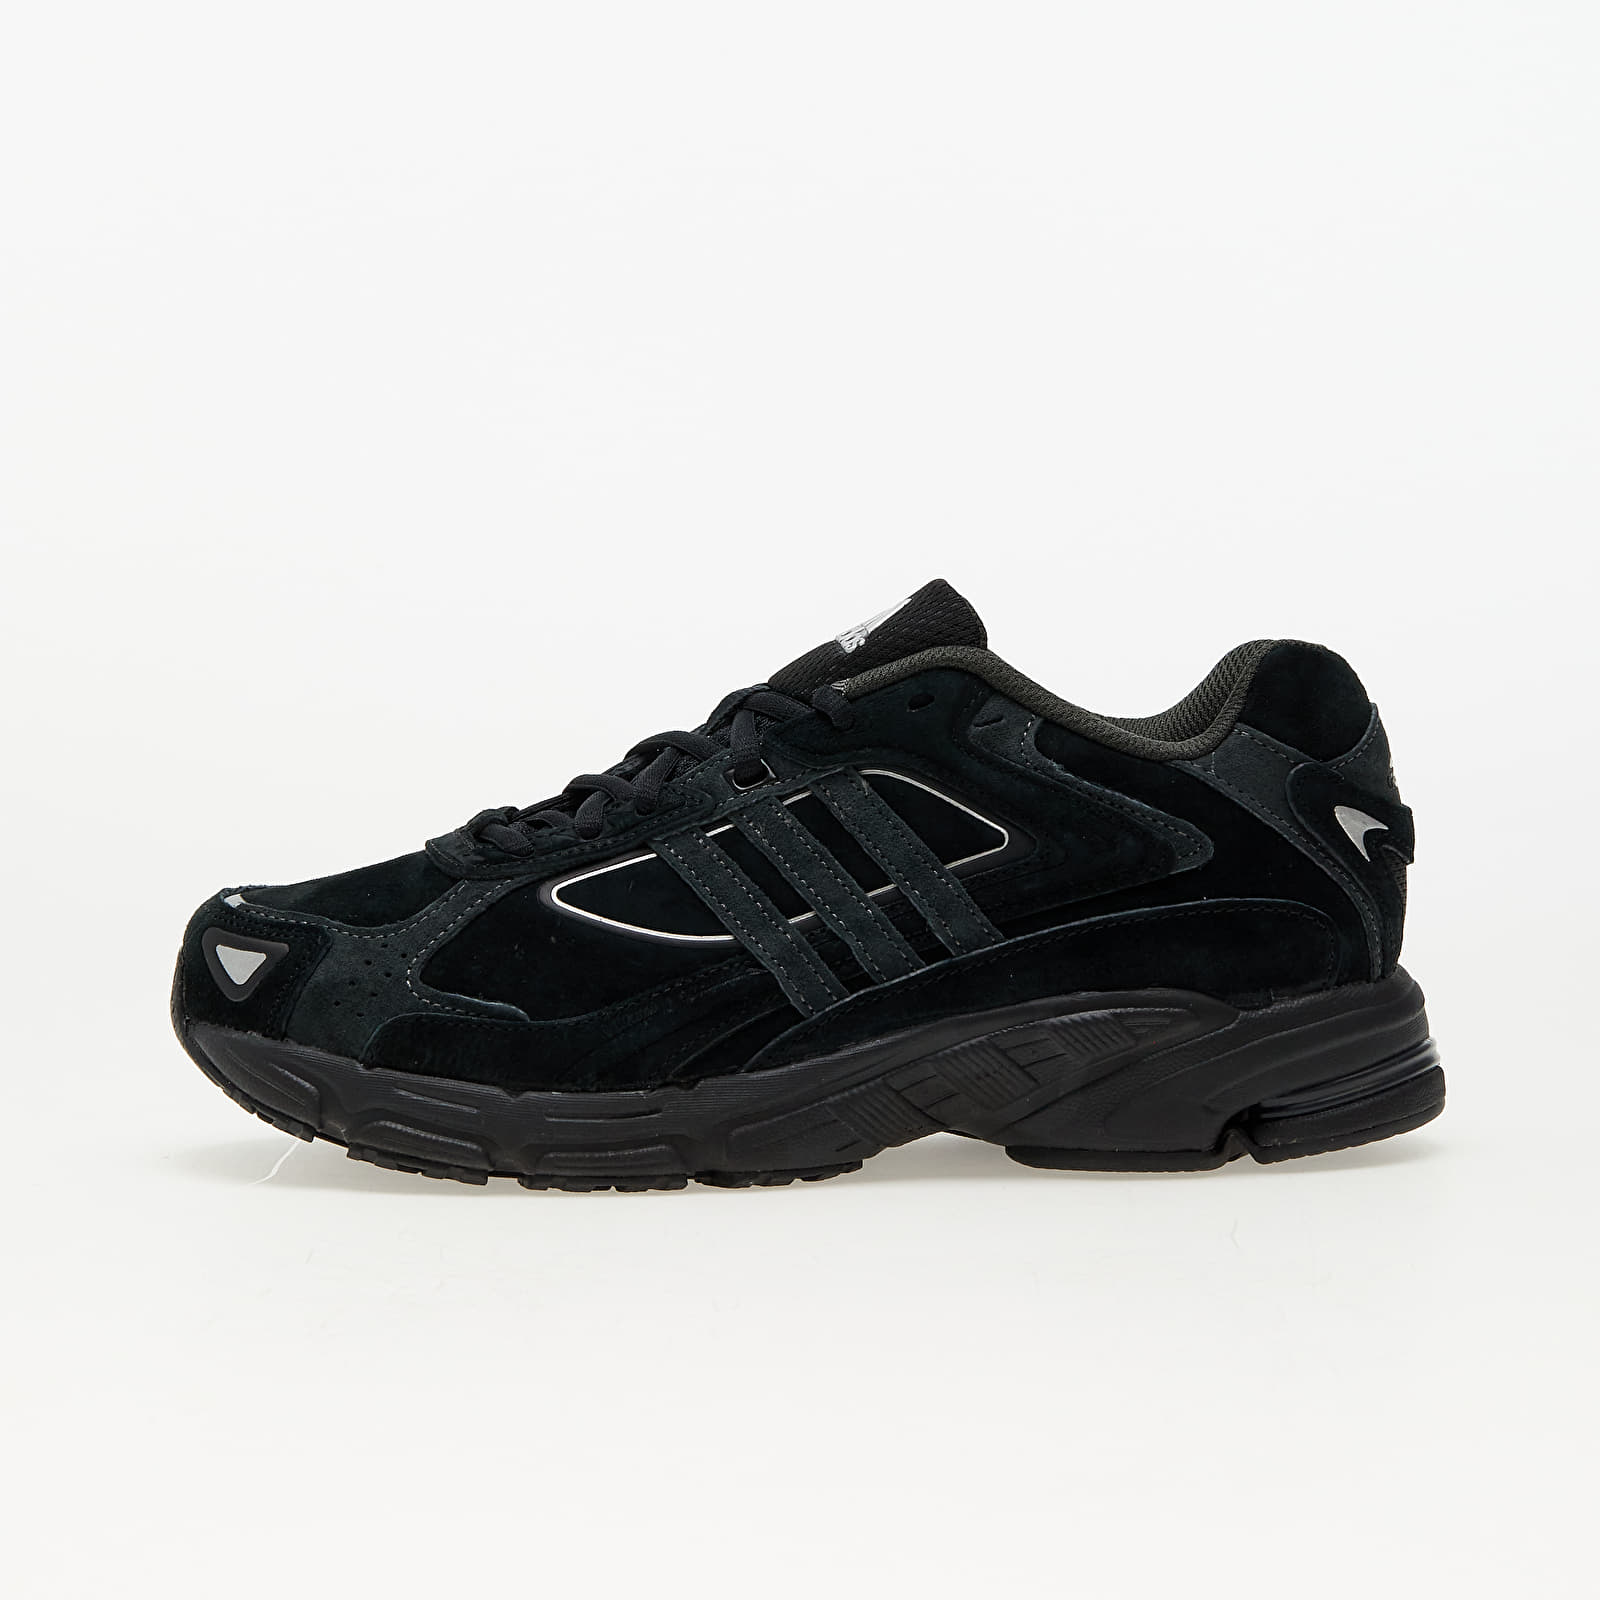 Baskets et chaussures pour hommes adidas Response Cl Core Black/ Carbon/ Core Black